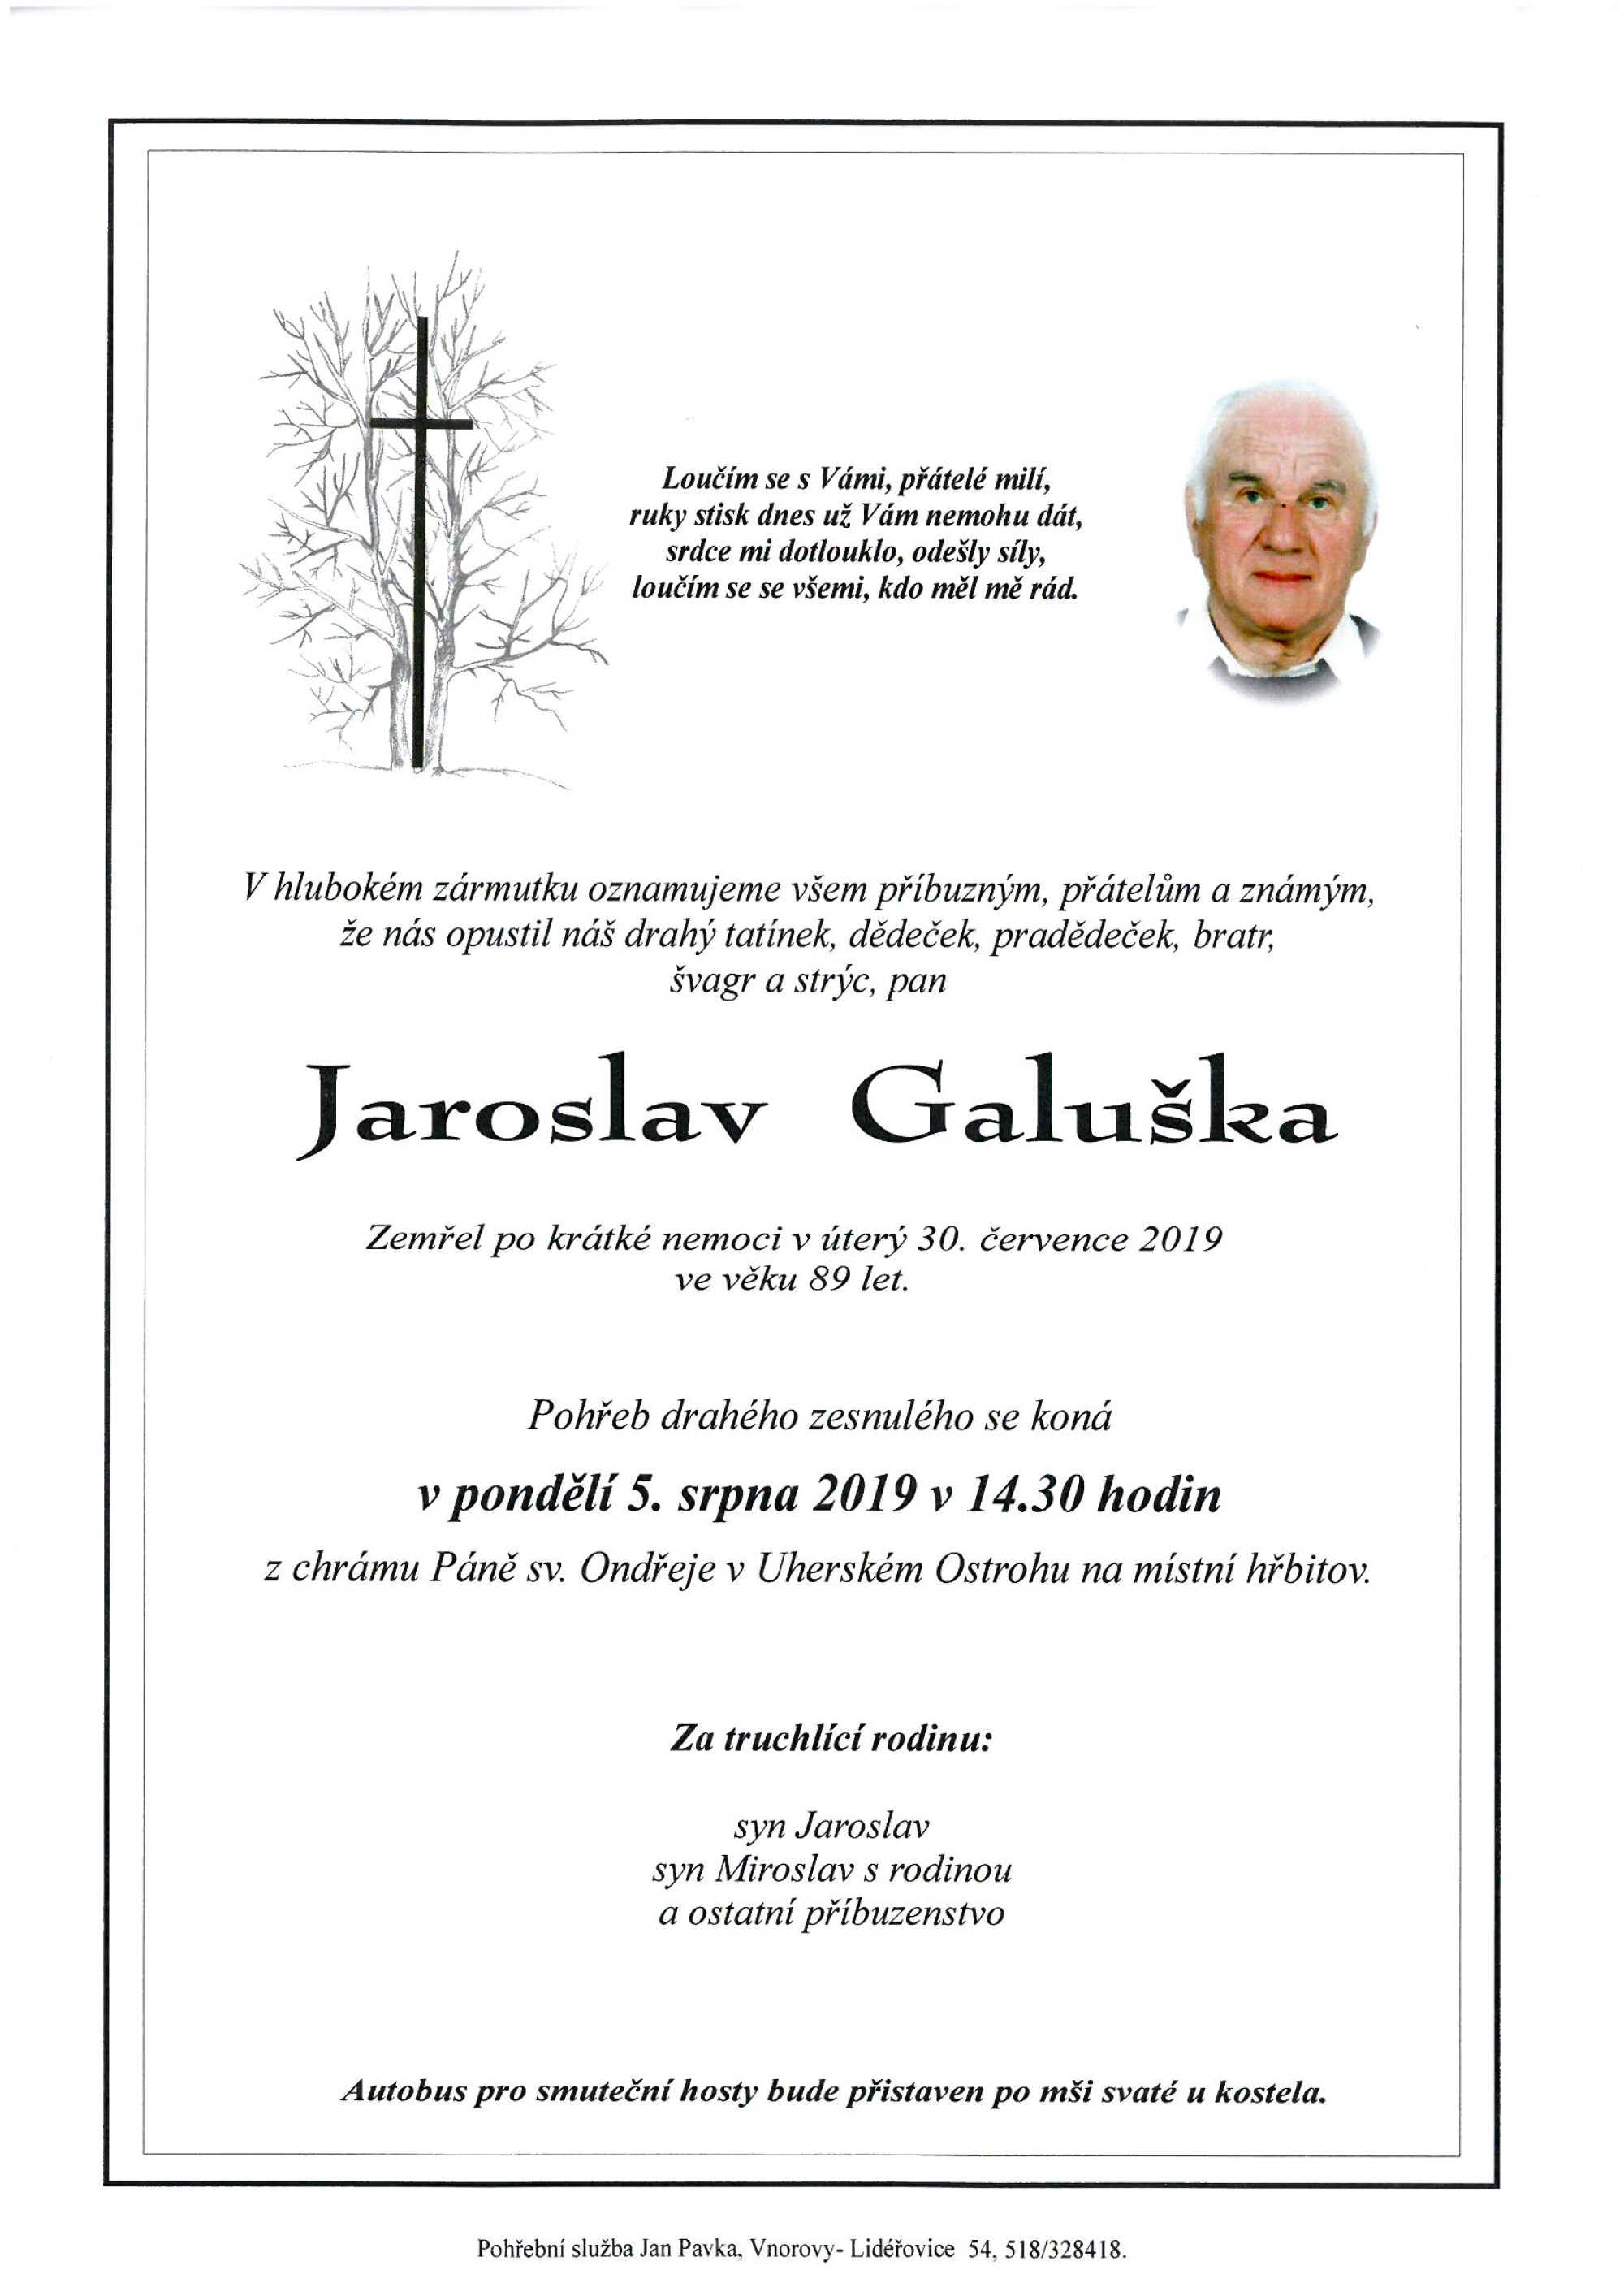 Jaroslav Galuška